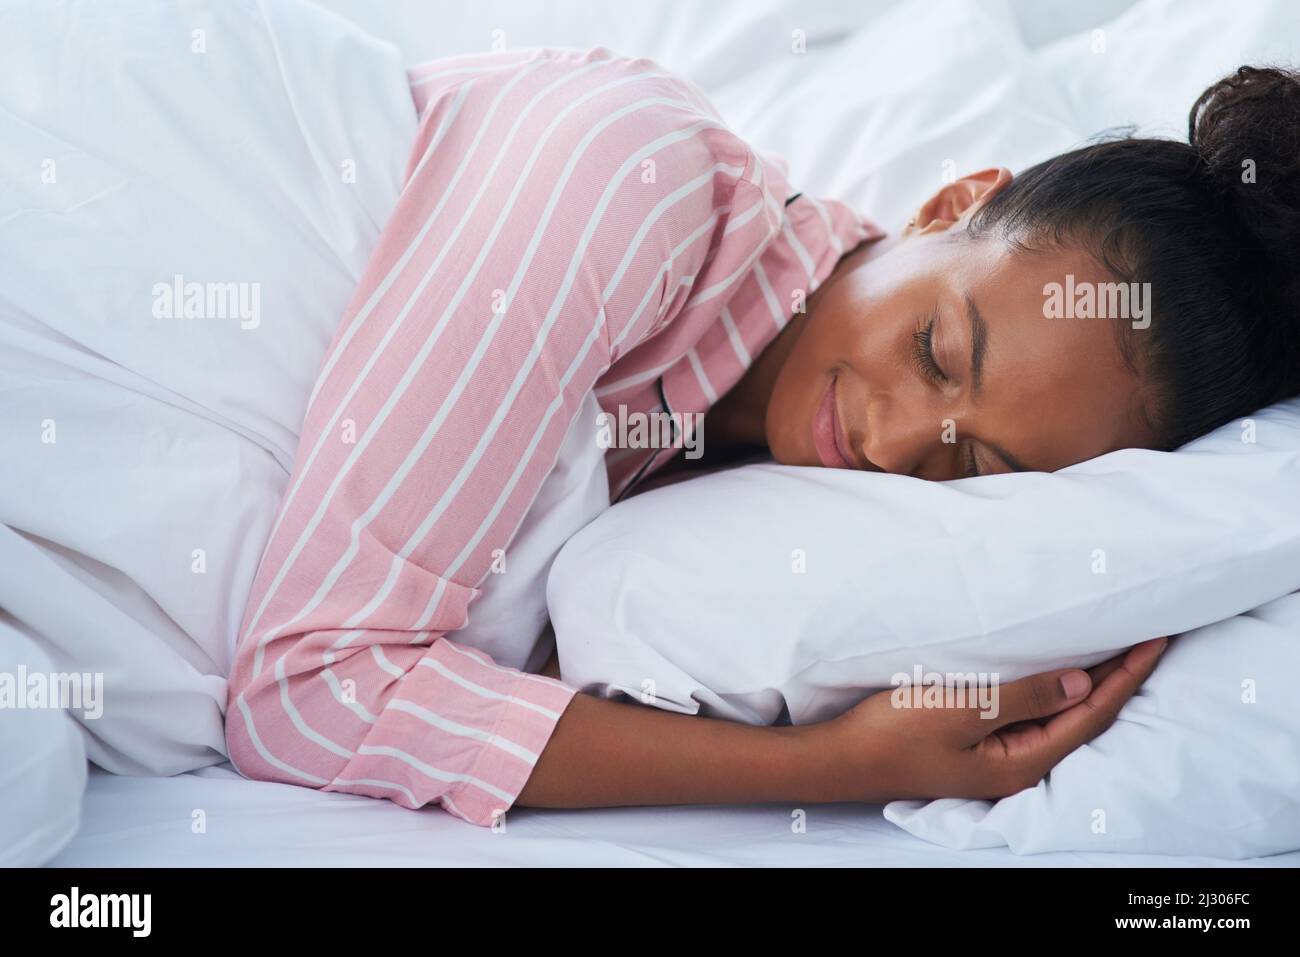 Schlafen wie ein Baby. Aufnahme einer attraktiven jungen Frau, die zu Hause friedlich im Bett schläft. Stockfoto